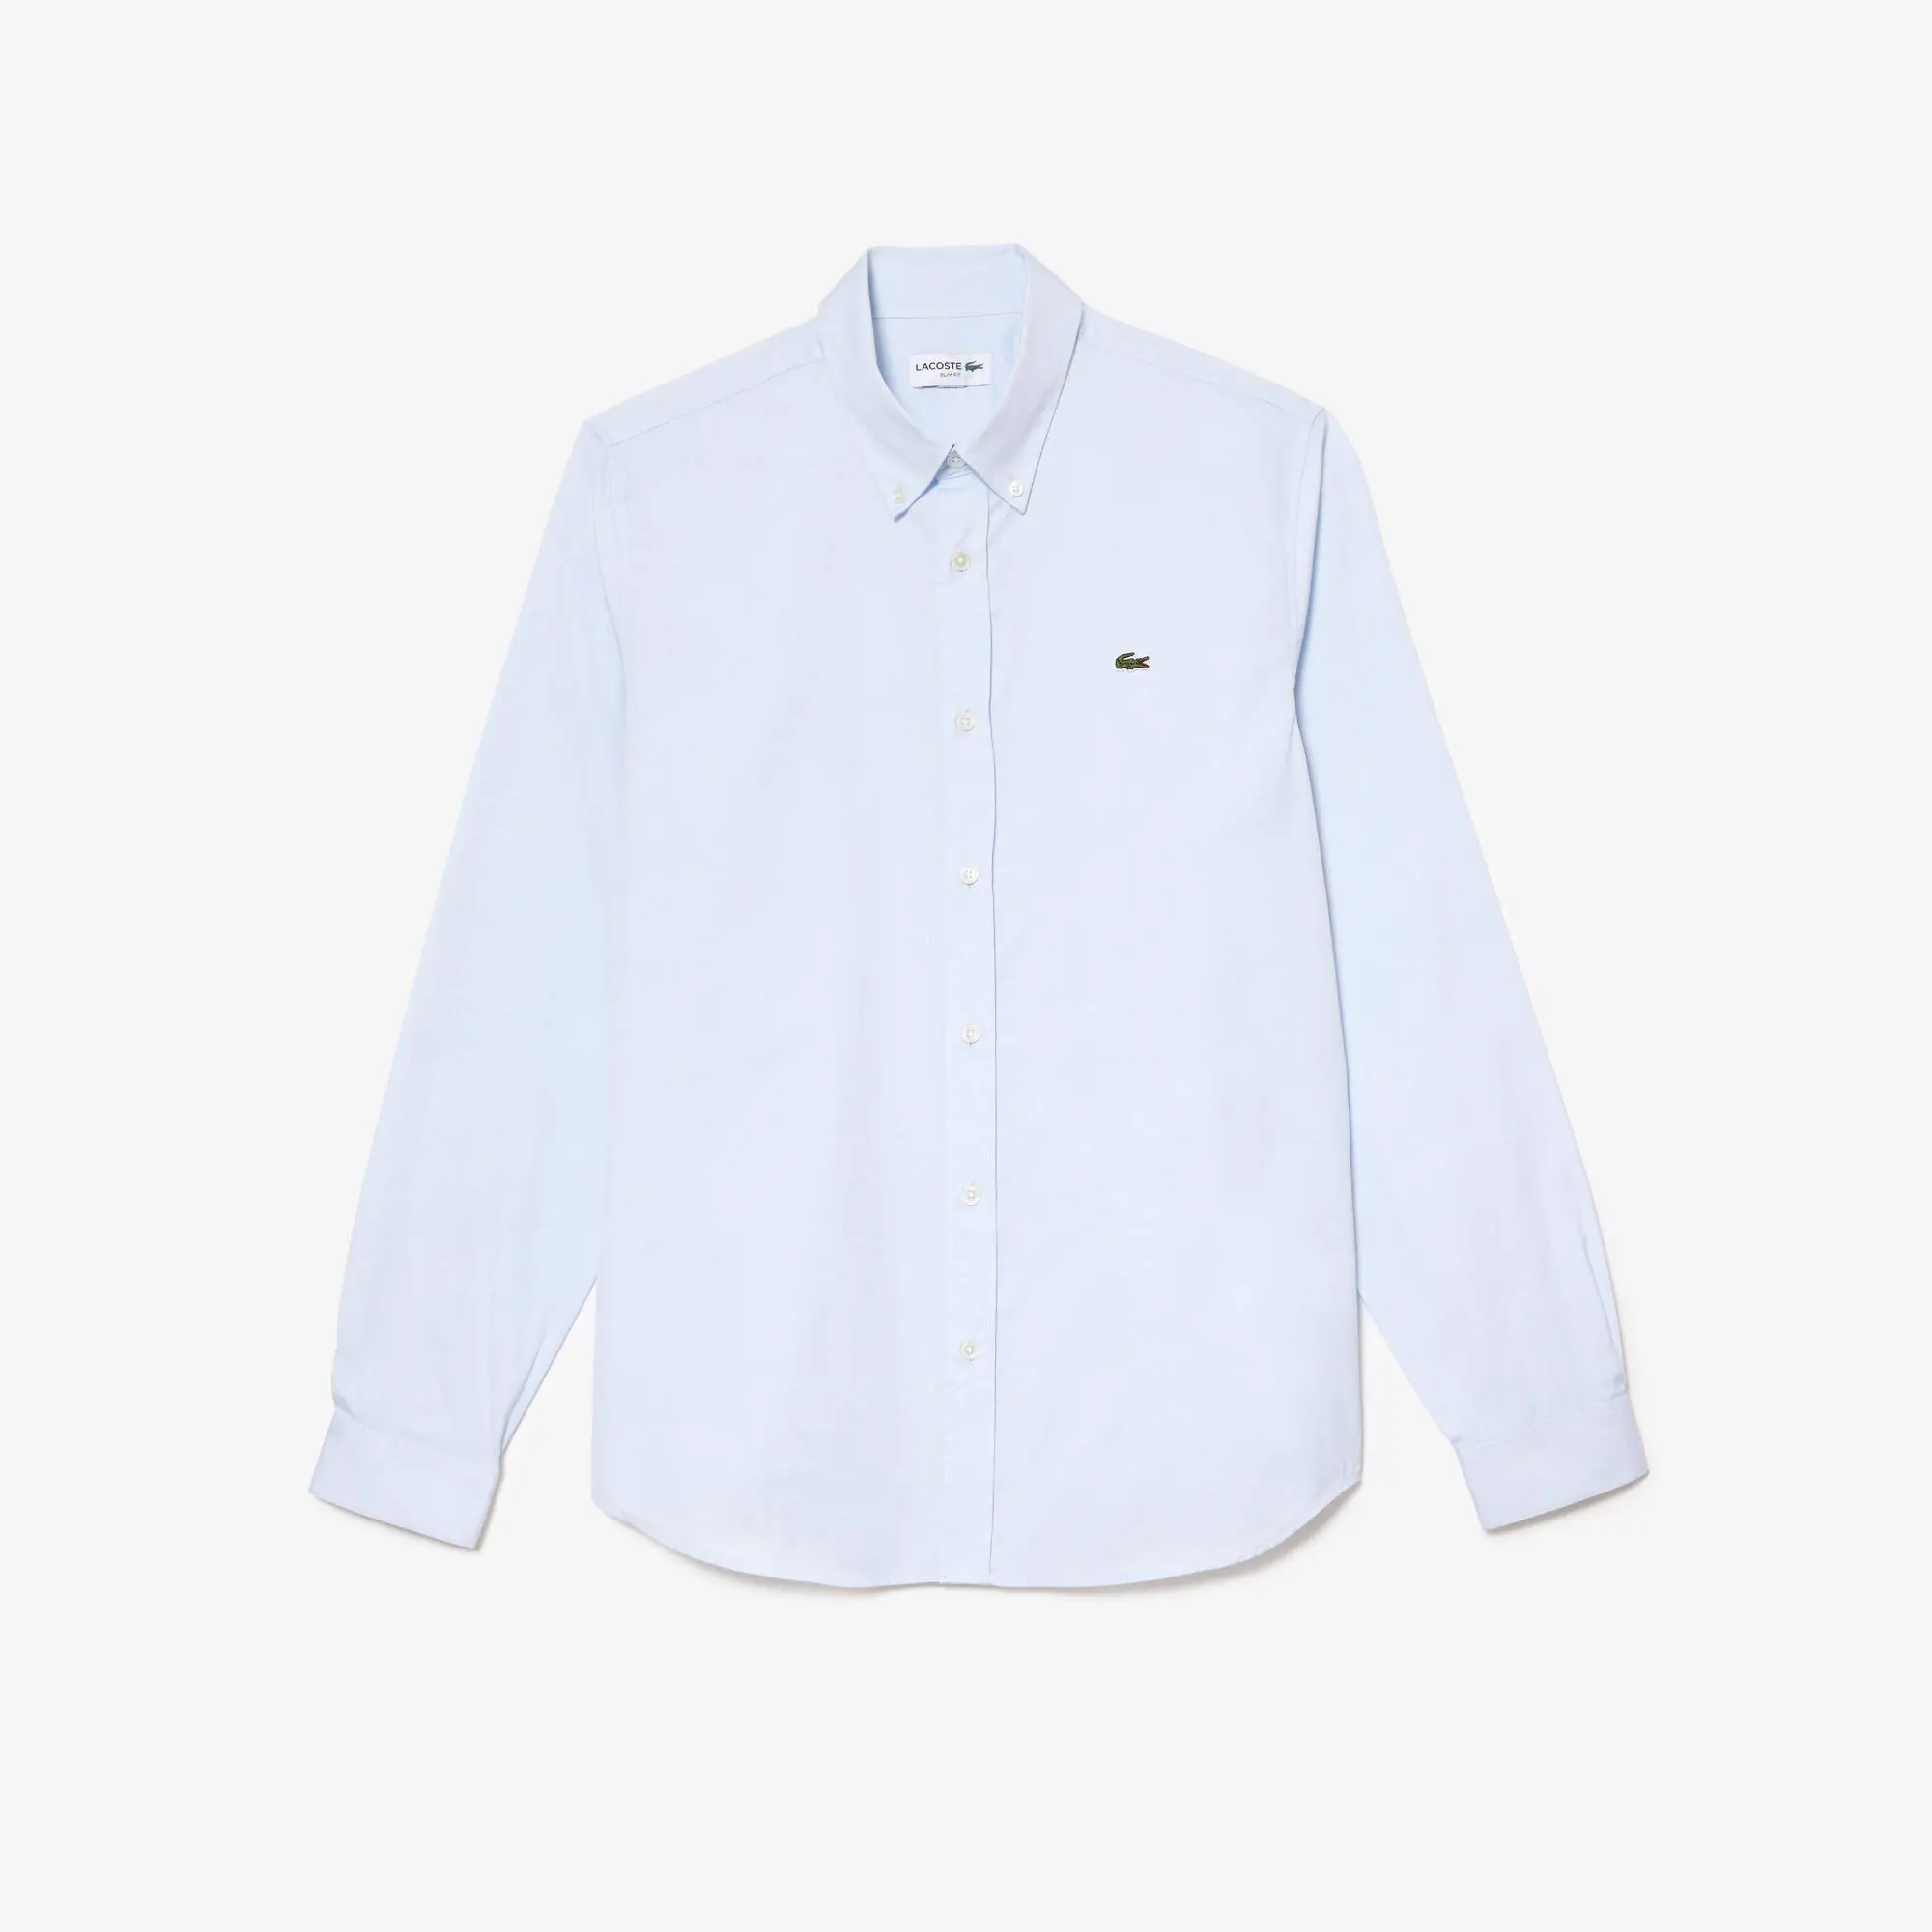 Lacoste Men’s Slim Fit Premium Cotton Shirt. 2